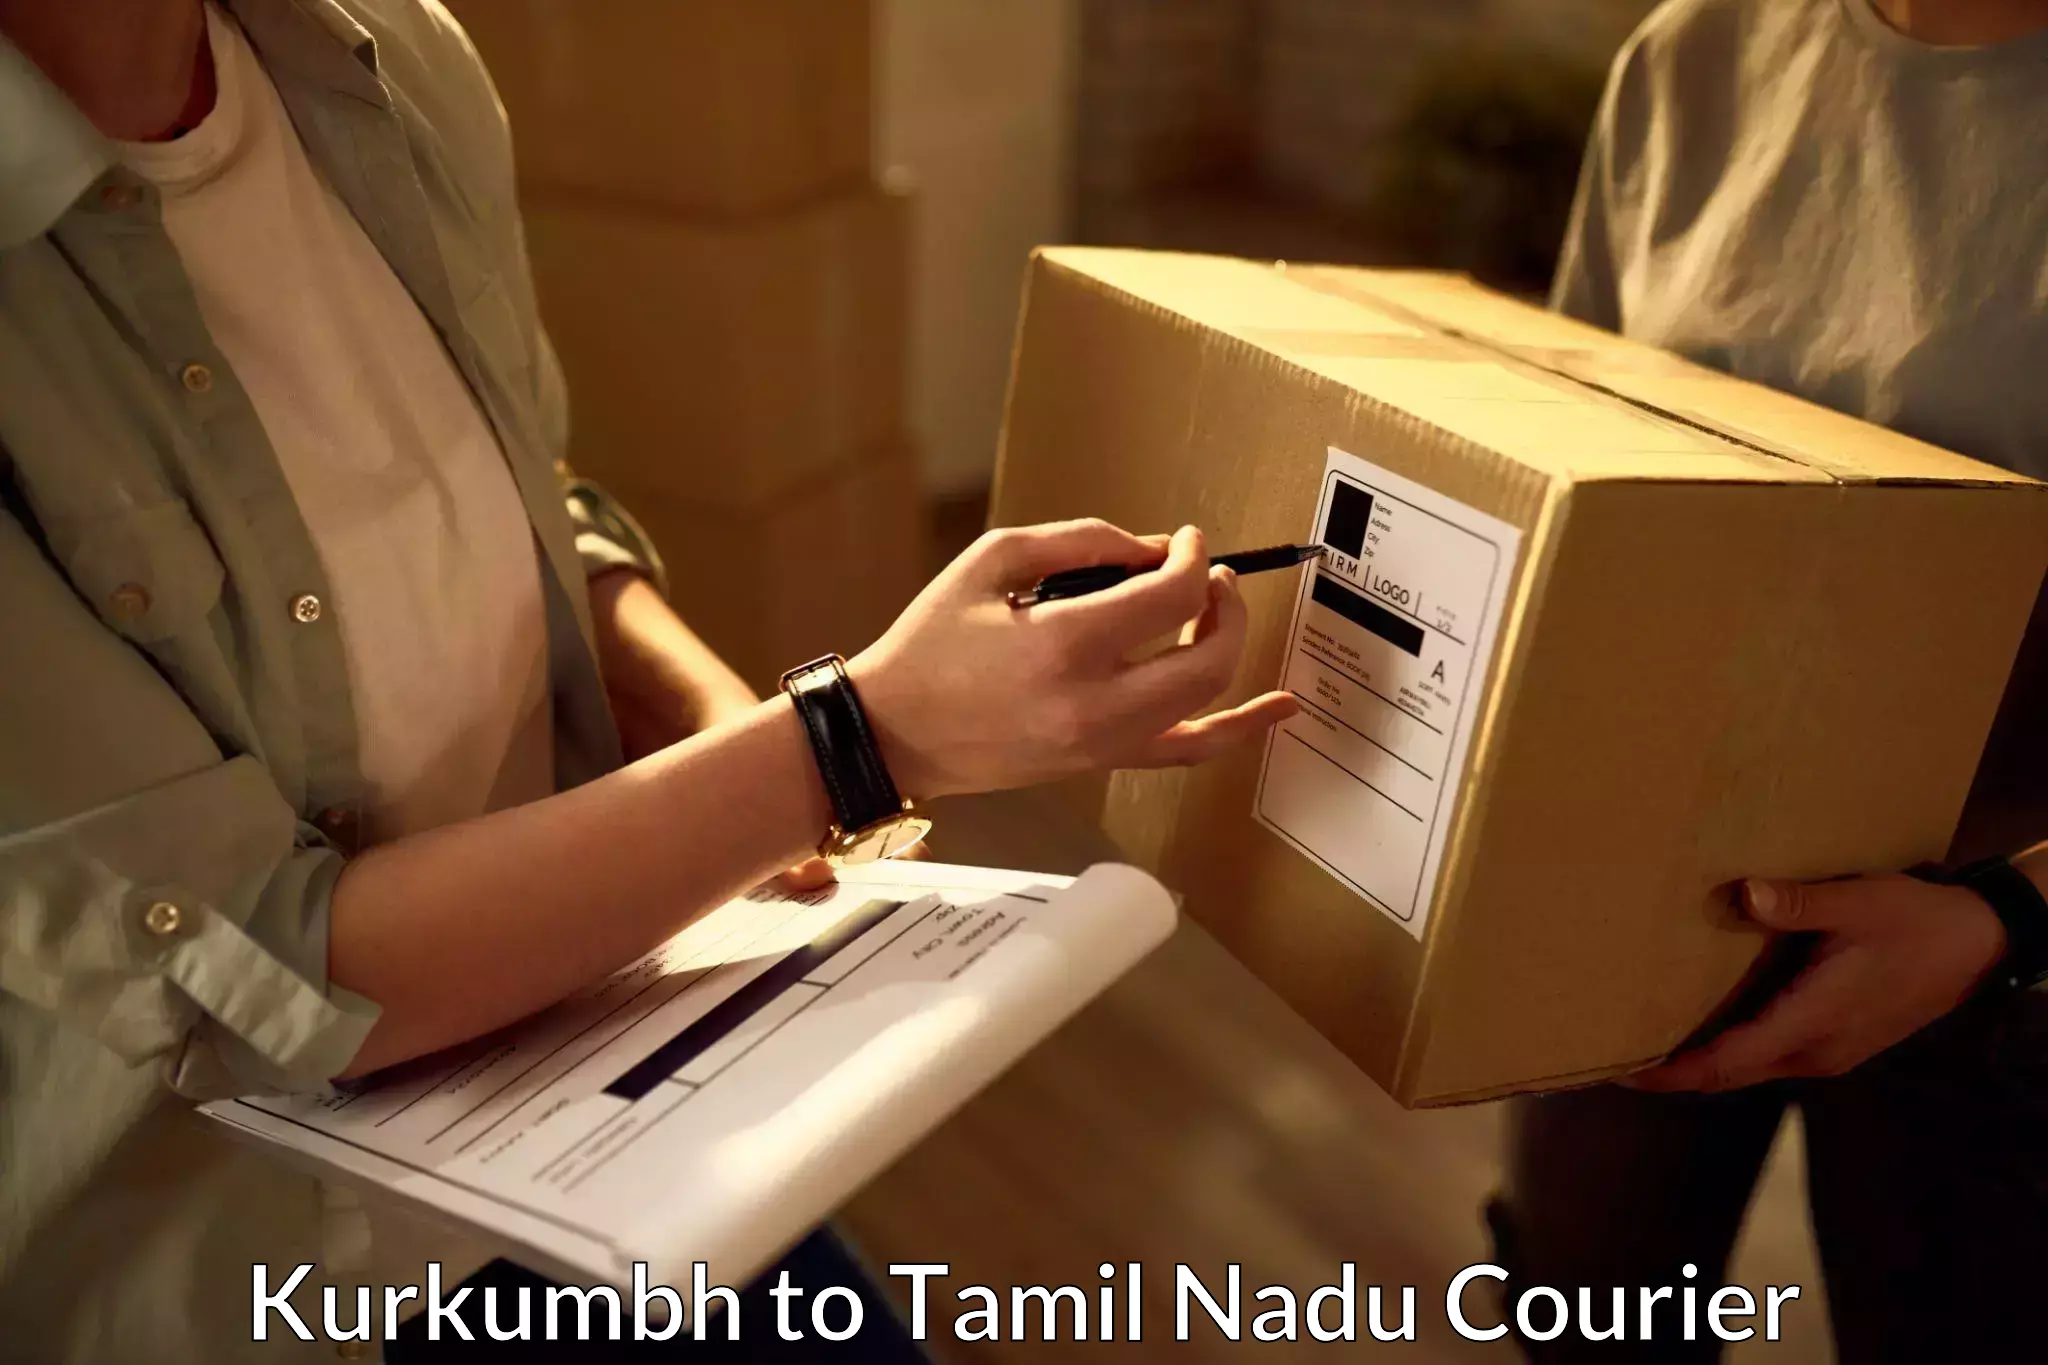 Courier insurance Kurkumbh to Sivakasi